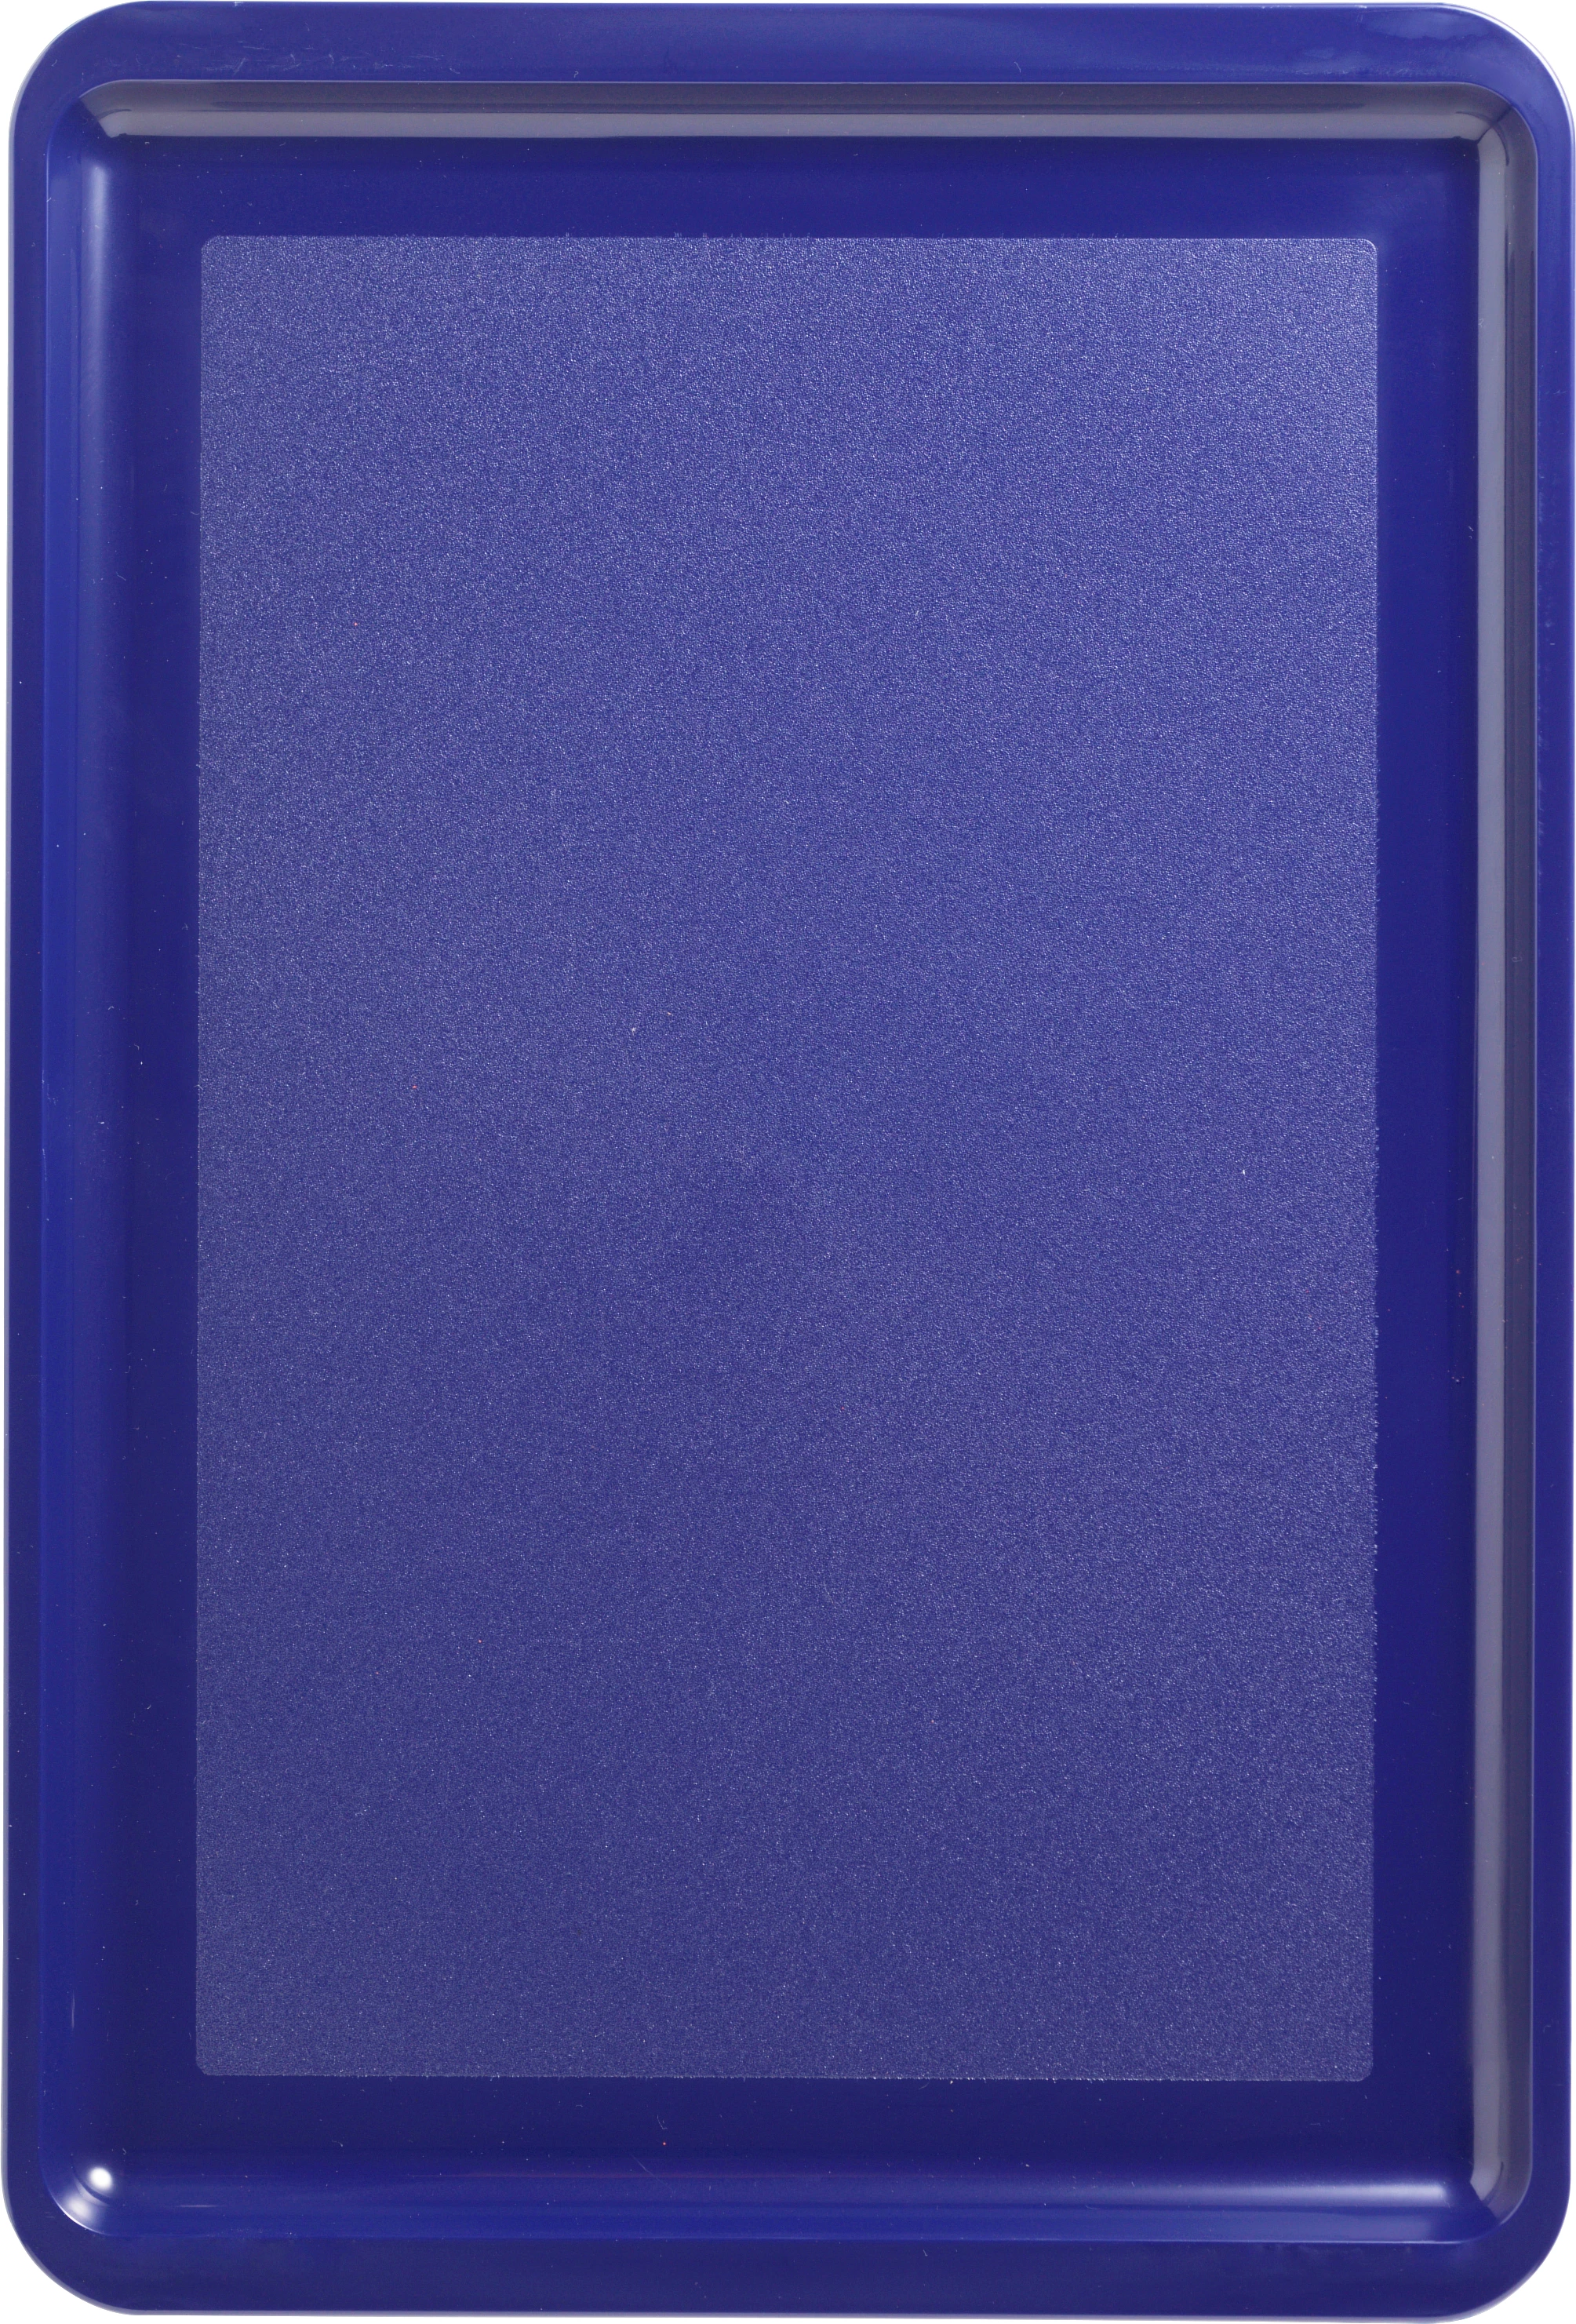 Farusa bakke, blå plast, 45 x 30,5 cm